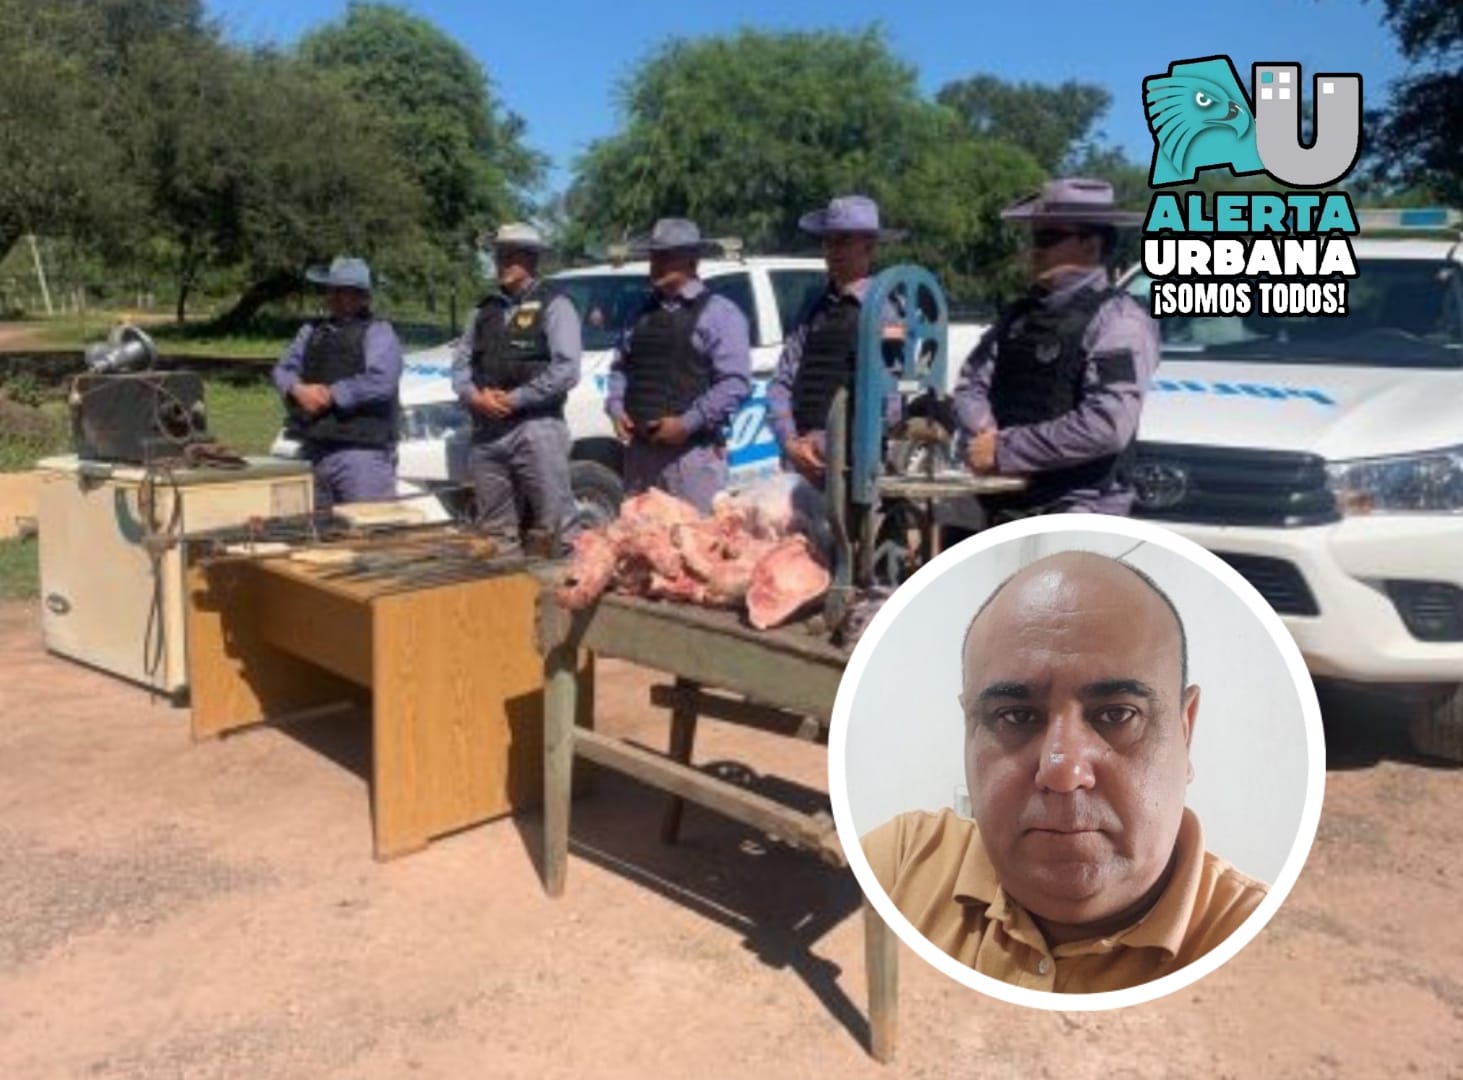 “No soy cuatrero, pagué por la carne”: lo dijo Aldo Almirón, exfuncionario de Peppo, tras el escándalo por la clausura de una carnicería en Villa Ángela